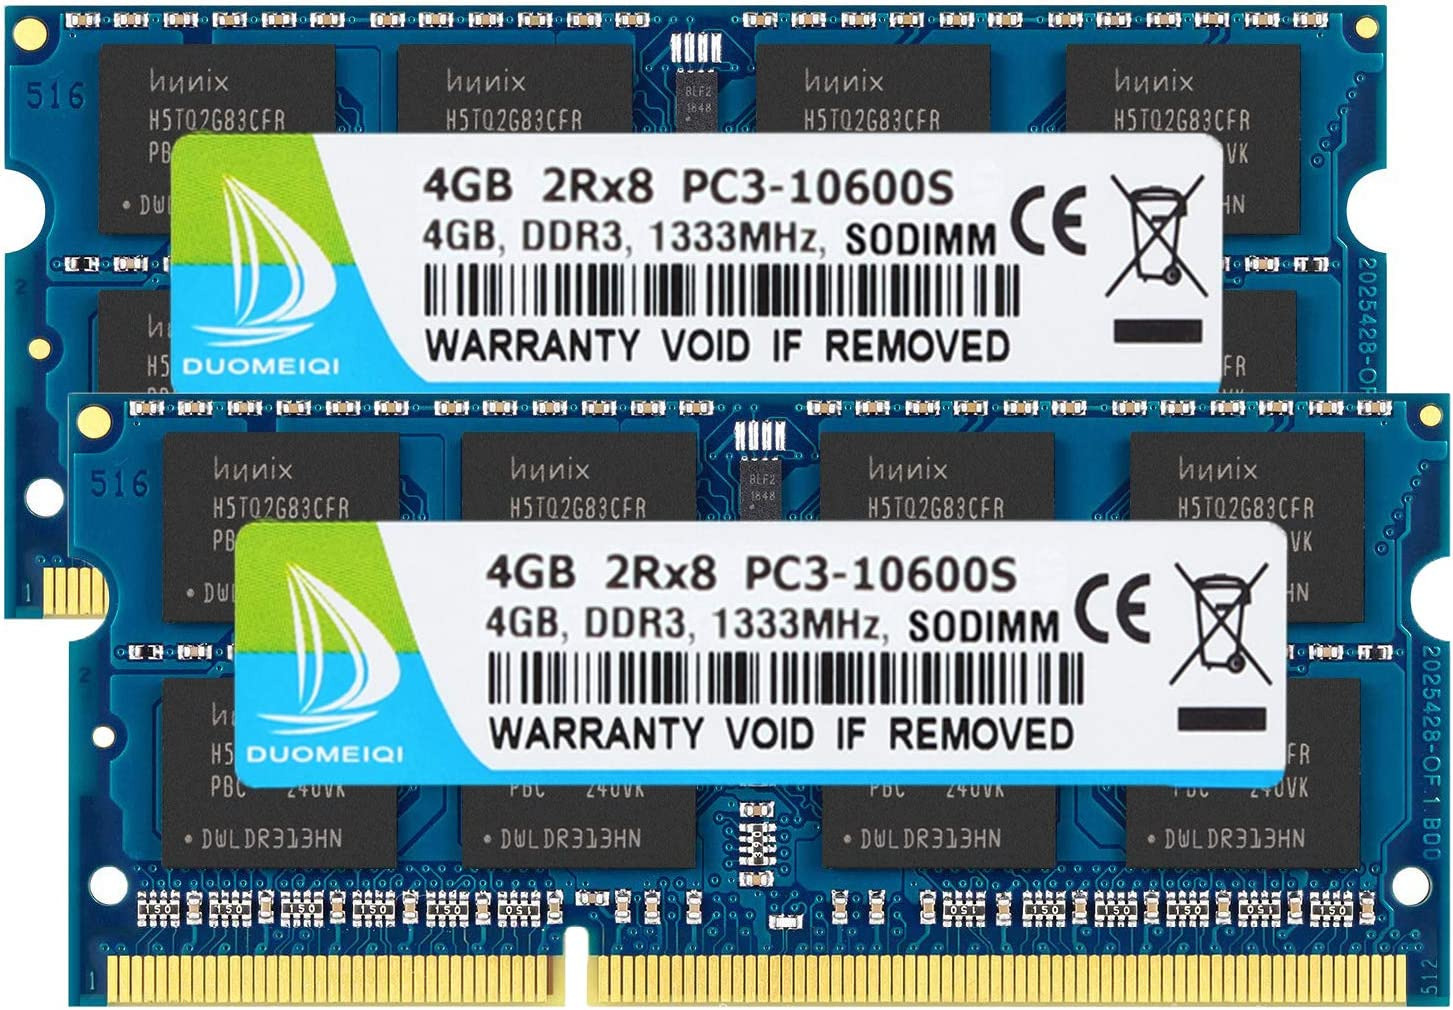 DUOMEIQI DDR3 Ram 8GB Kit (2X4GB) PC3-10600S DDR3 1333Mhz 2Rx8 Dual Rank PC3 106